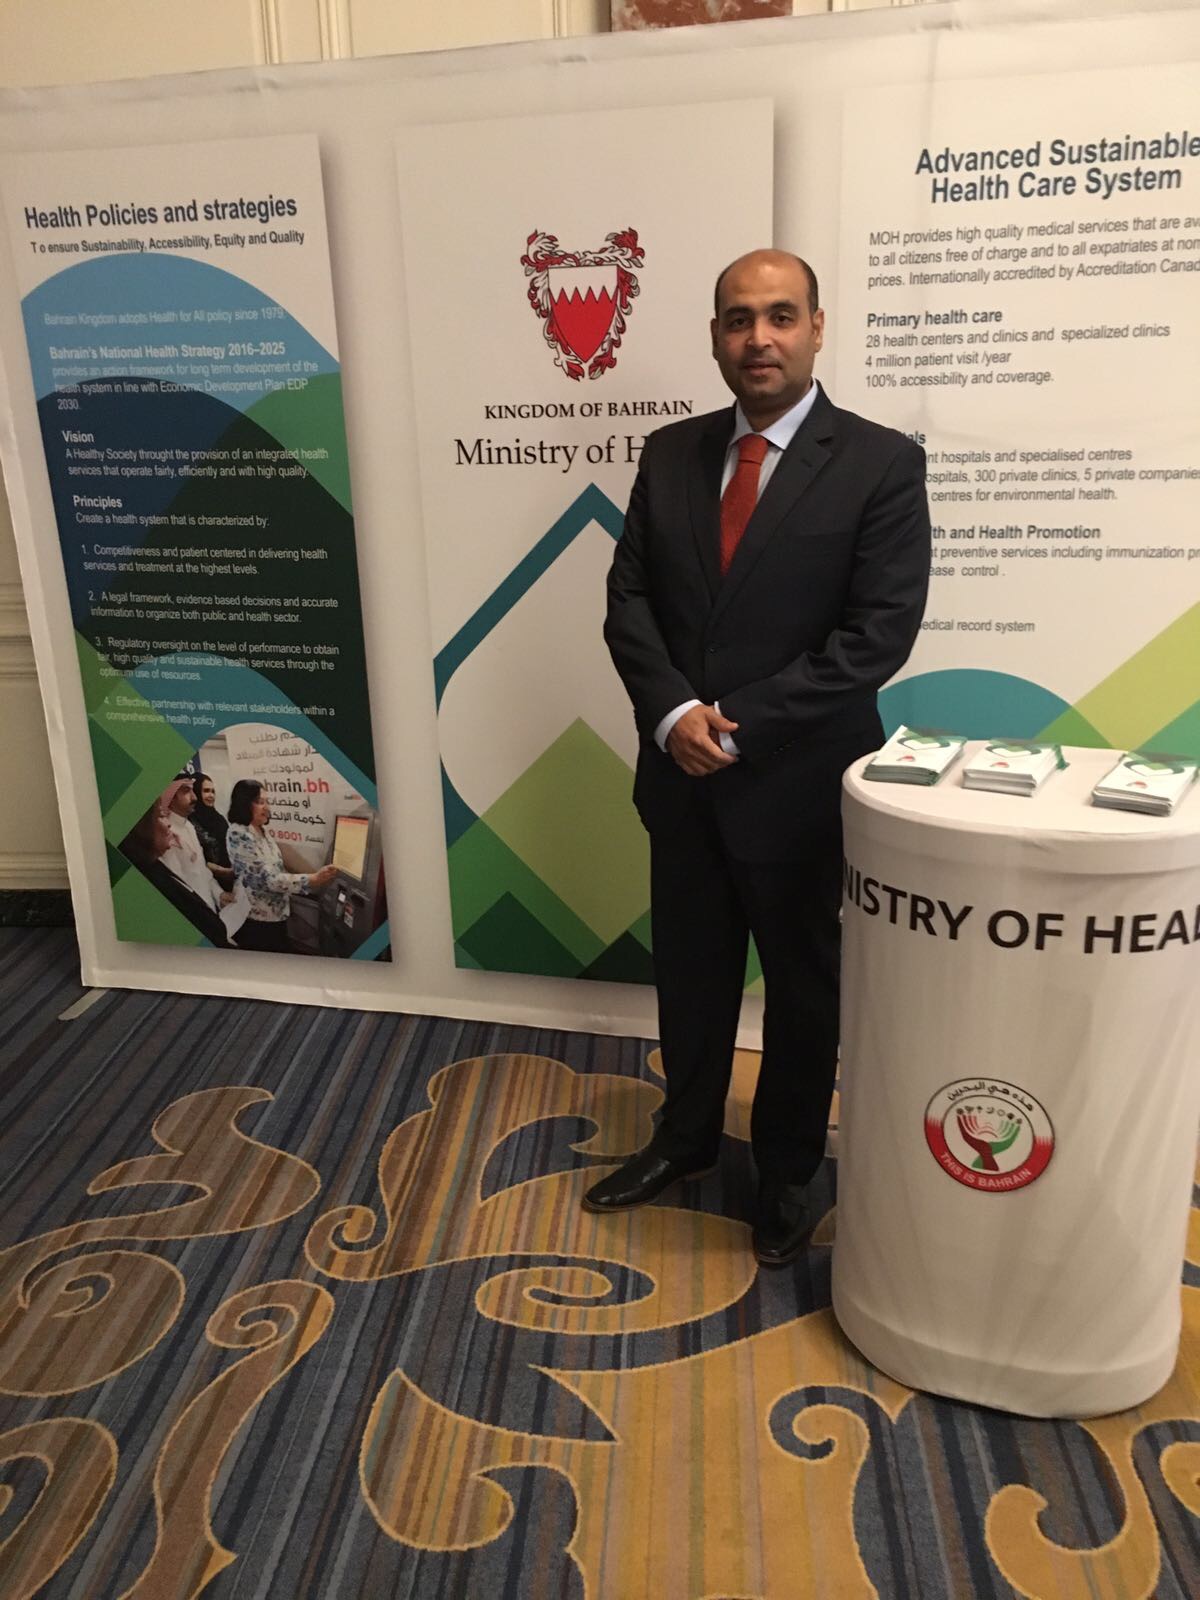 الدكتور "المانع":  مؤشرات تطور الخدمات الصحية في البحرين تعتبر الأفضل في المنطقة وعلى مستوى العالم .. ازدياد متوسط العمر إلى ٧٨ عاما ..